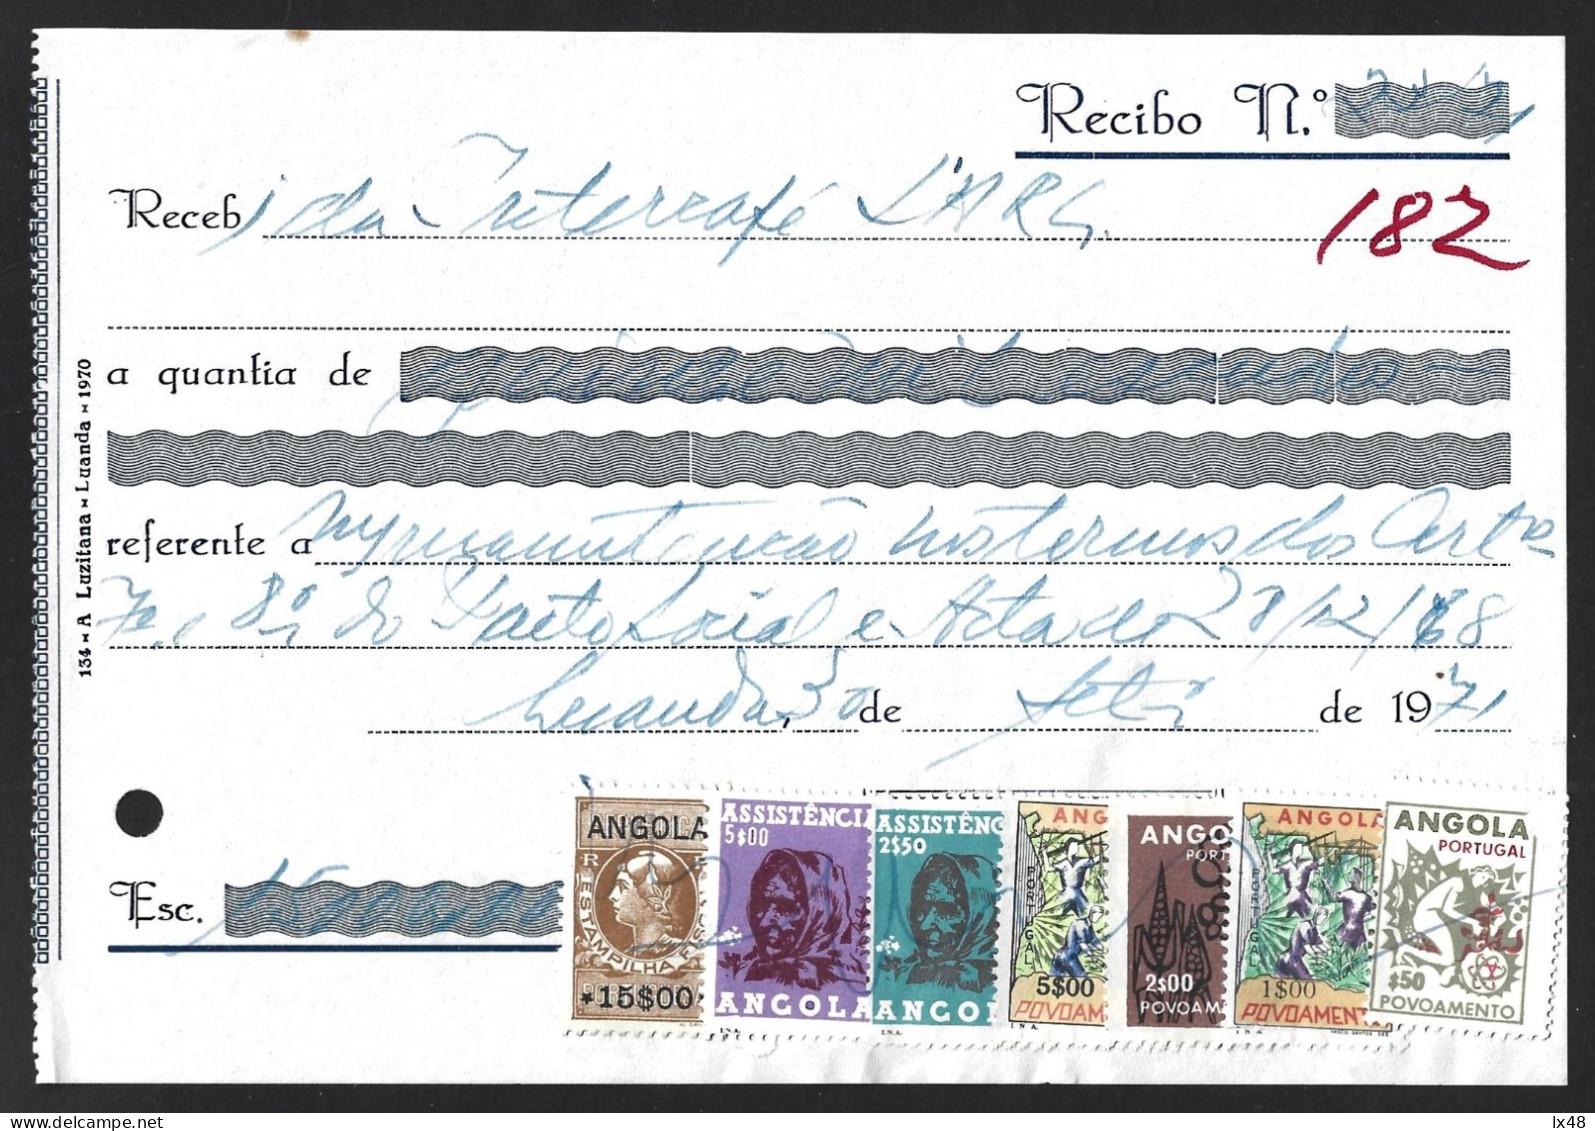 Recibo Emitido Em Luanda 1971 Com Stamp Fiscal 15$00 E 6 Stamps De Correio Usados Como Fiscais Da Assistência E Povoamen - Cartas & Documentos